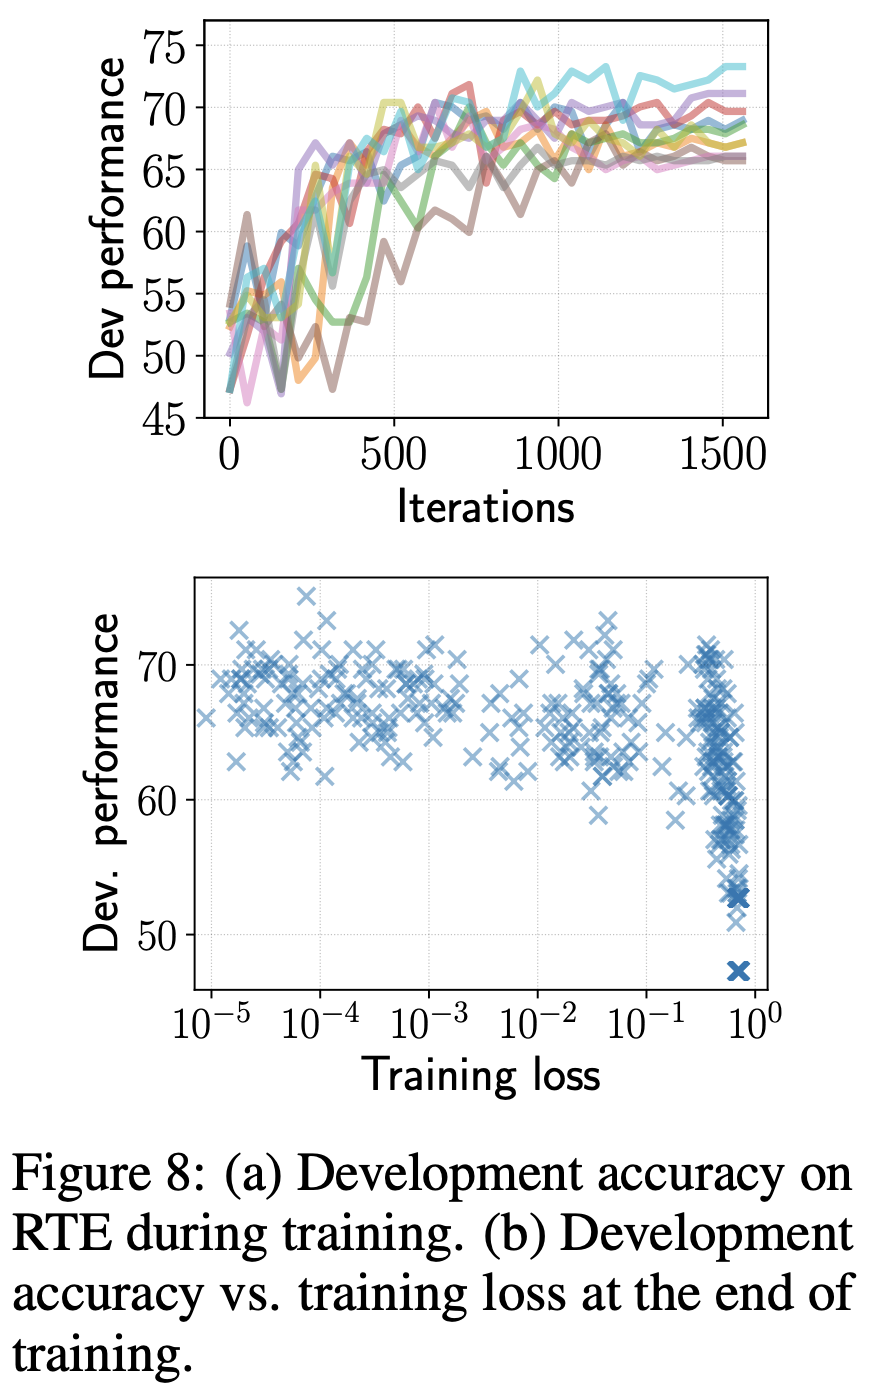 iteration回数と汎化性能の関係・学習データにおける損失と汎化性能の関係